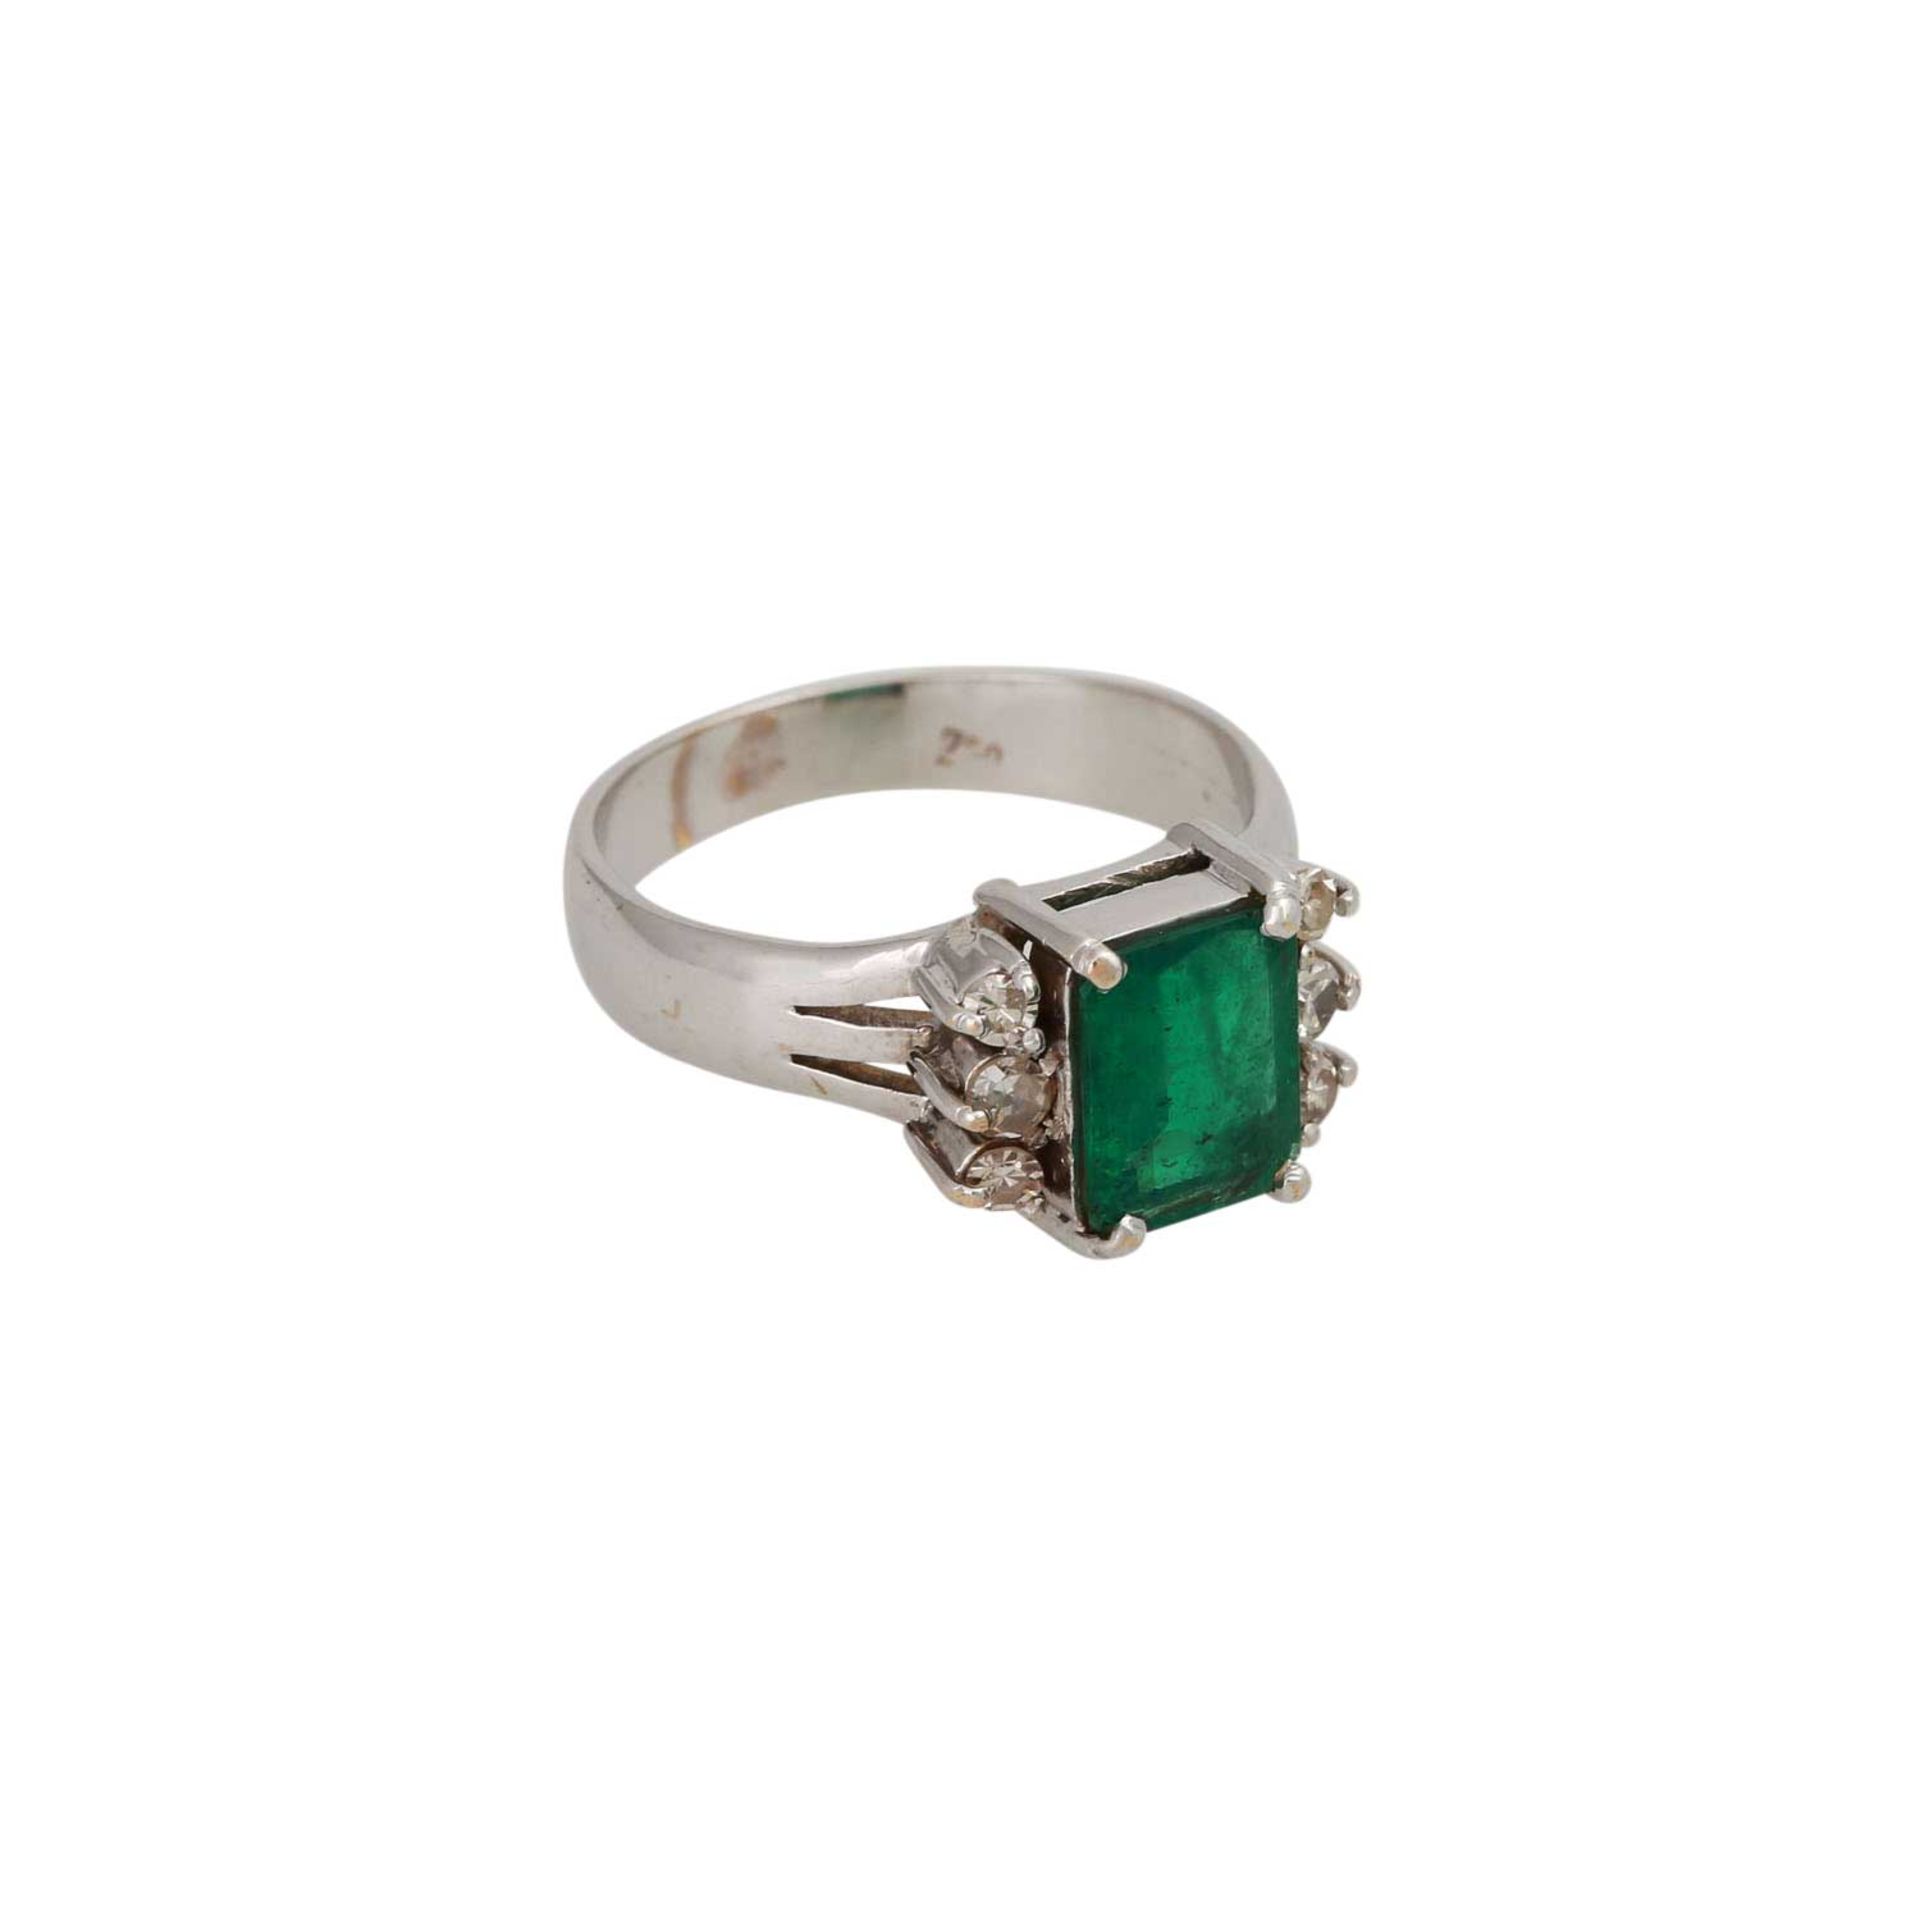 Ring mit Smaragd und Diamantenin WG 18K. RW: ca. 57, Smaragd ca. 9x6,5 mm. 20./21. Jh. - Bild 2 aus 4